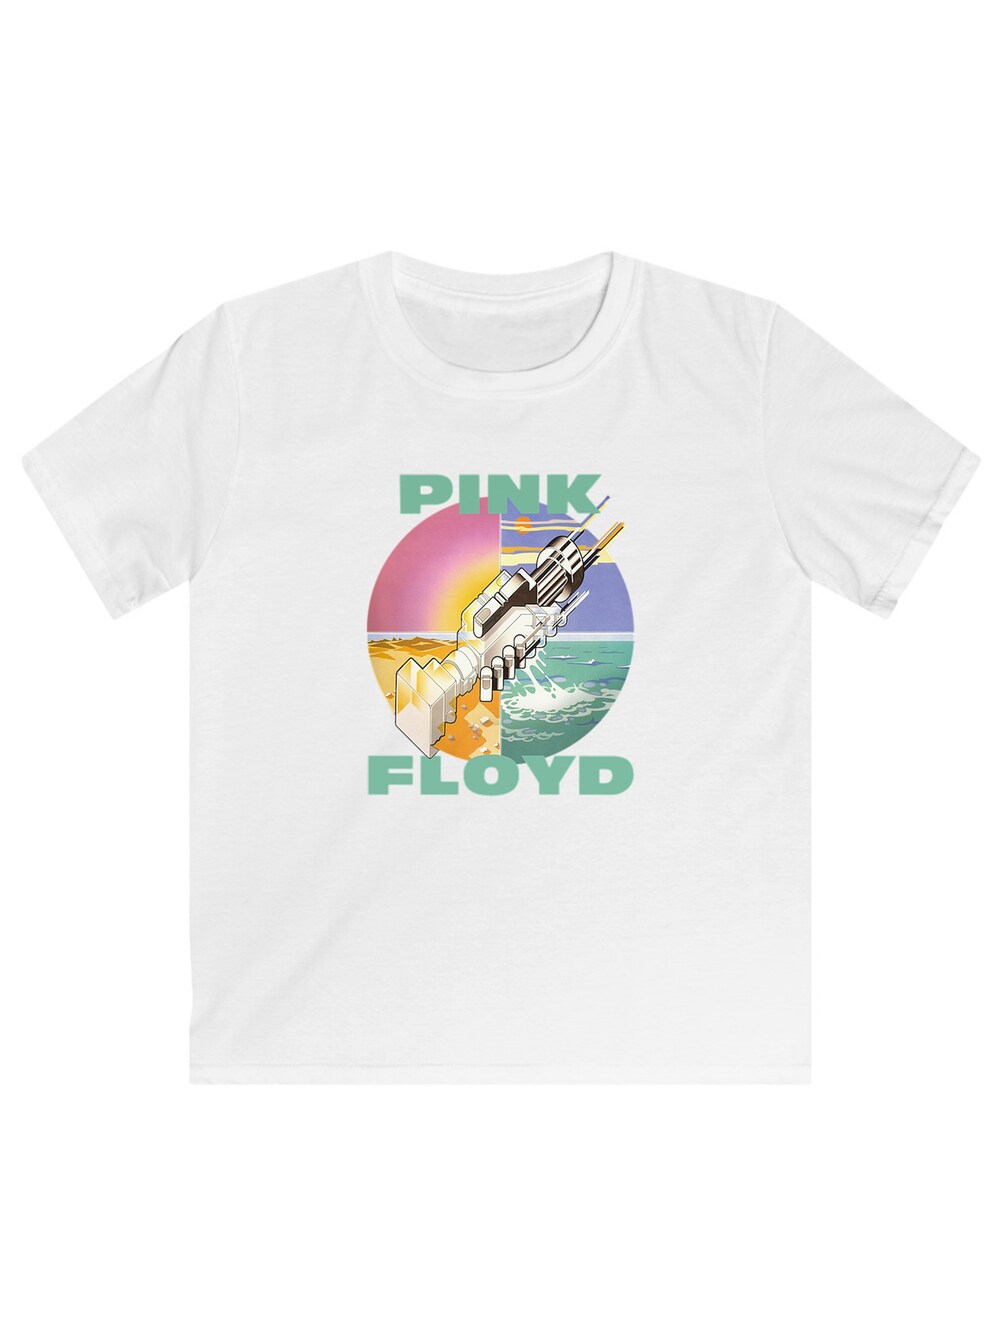 Рубашка F4Nt4Stic Pink Floyd Wish You Were Here, белый pink floyd wish you were here lp конверты внутренние coex для грампластинок 12 25шт набор